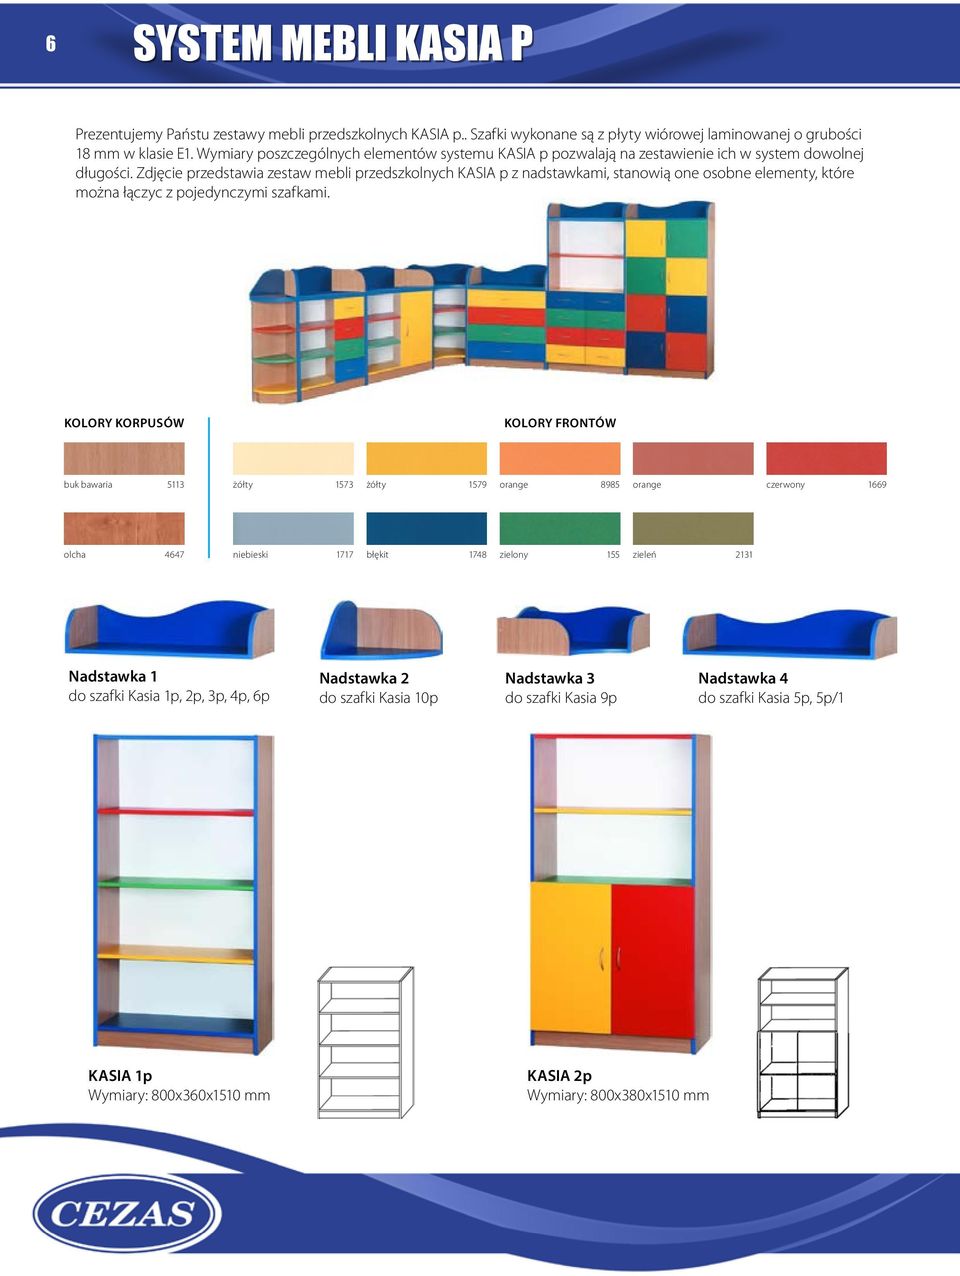 Zdjęcie przedstawia zestaw mebli przedszkolnych KASIA p z nadstawkami, stanowią one osobne elementy, które można łączyc z pojedynczymi szafkami.